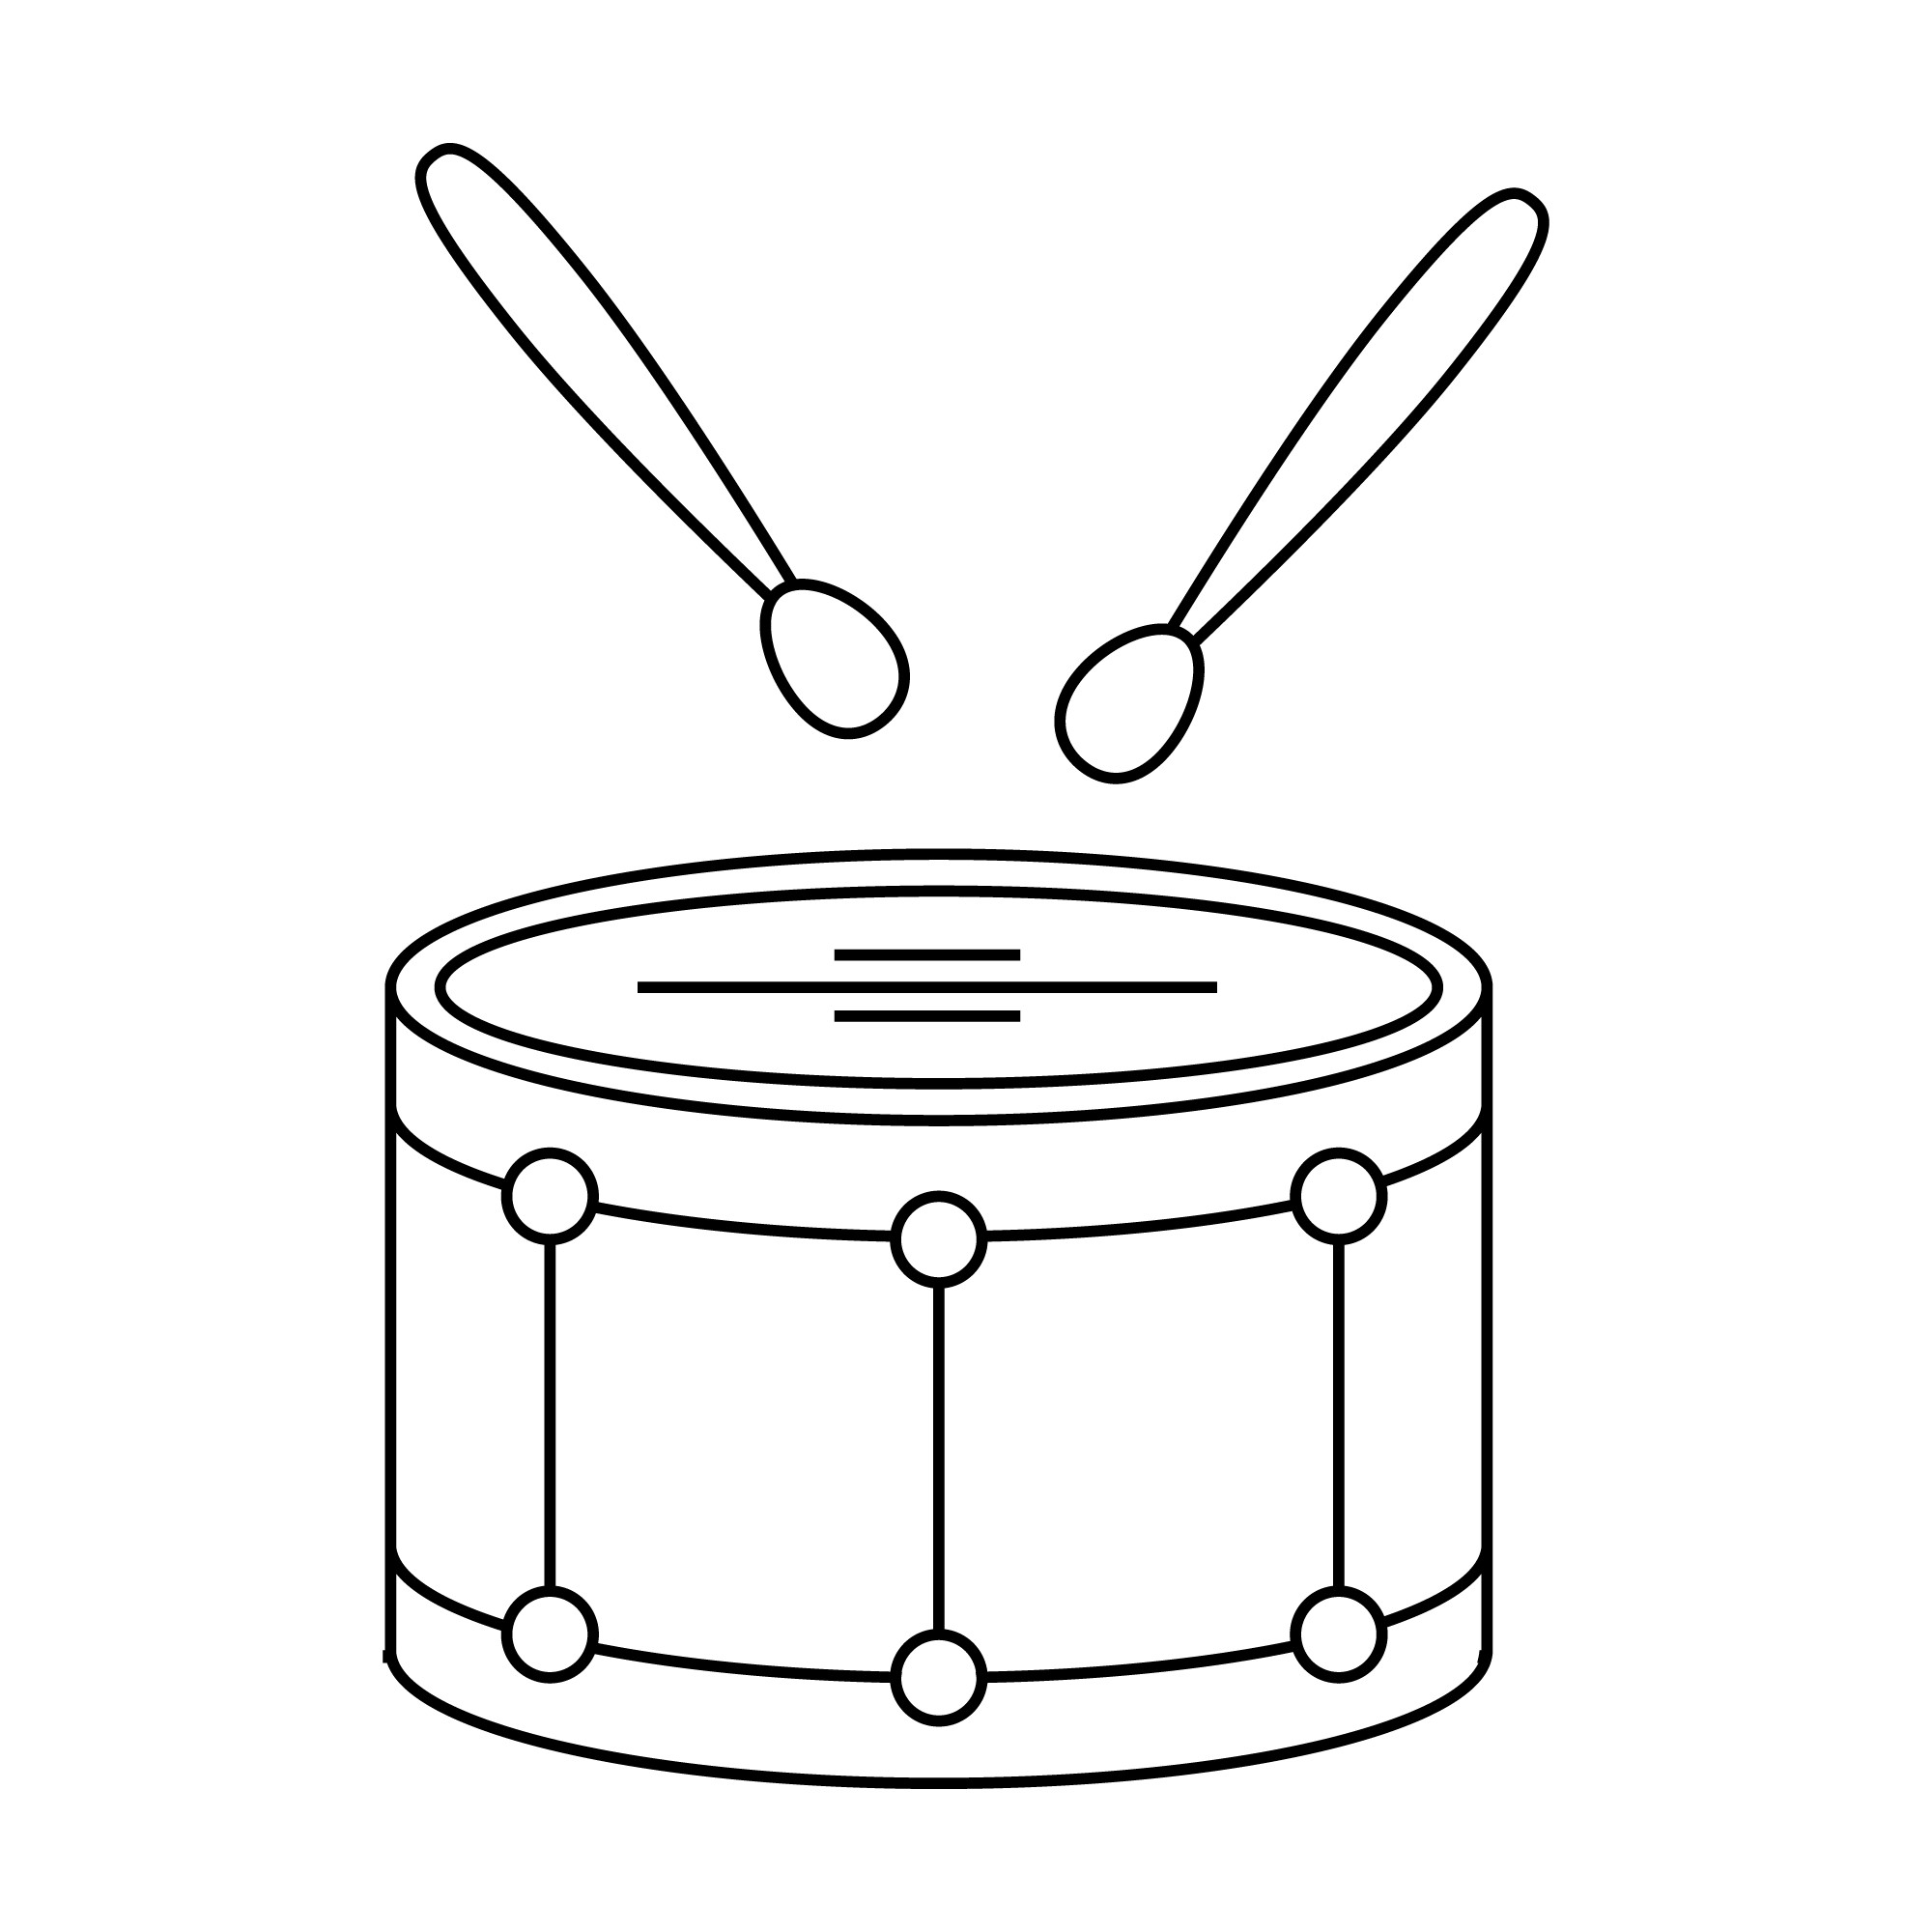 Раскраска для детей: игрушка музыкальный барабан с палочками